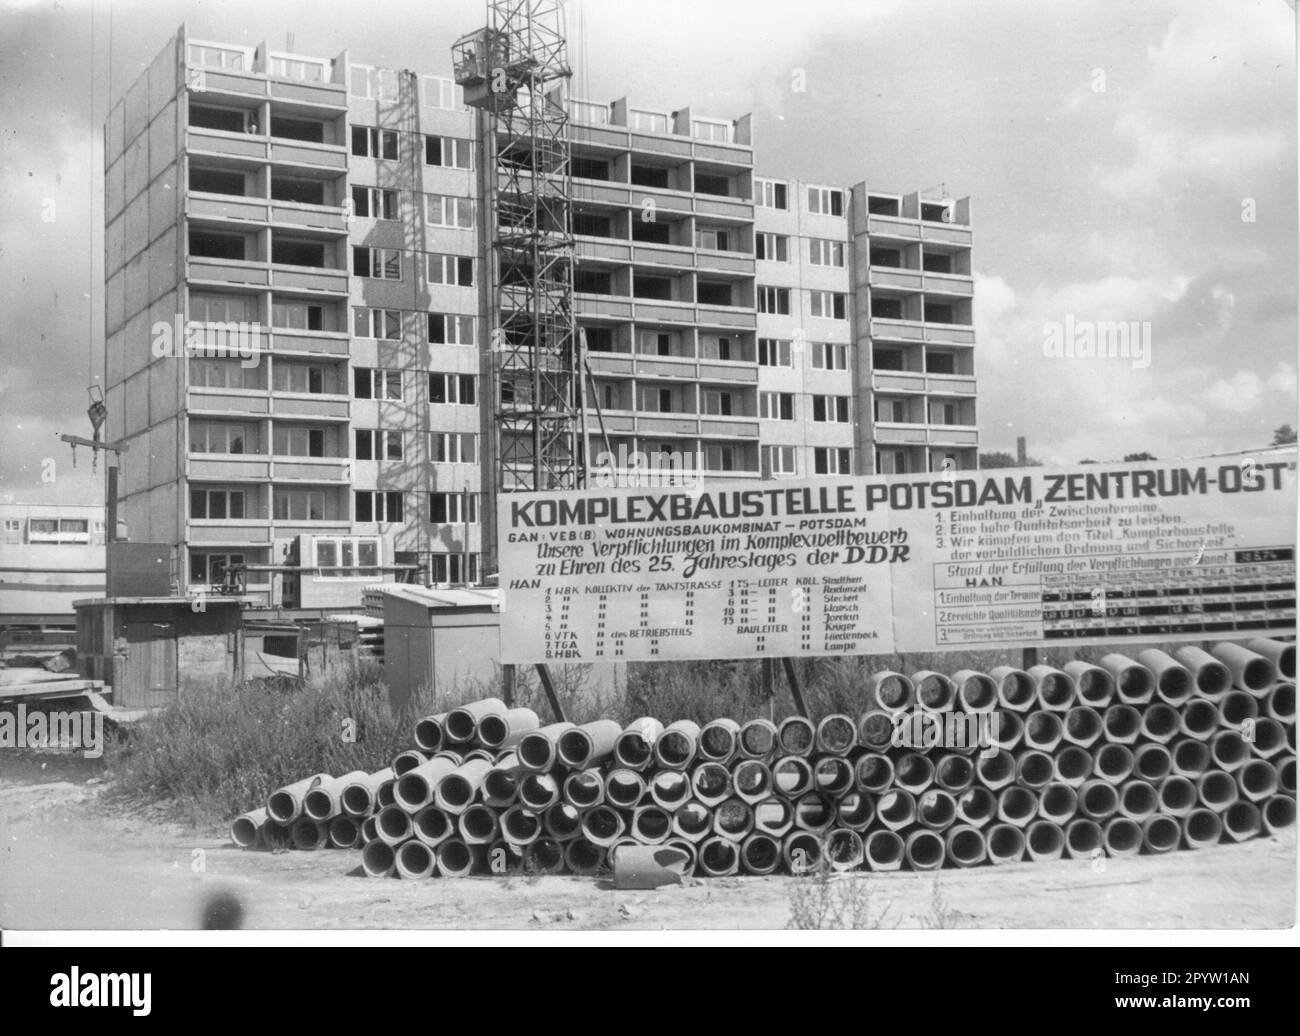 Grosse Baustelle, Bauarbeiten, Wohnungsbau im Neubaugebiet Zentum-Ost in Potsdam. DDR. Foto: MAZ/Archiv, 70s. [Maschinelle Übersetzung] Stockfoto